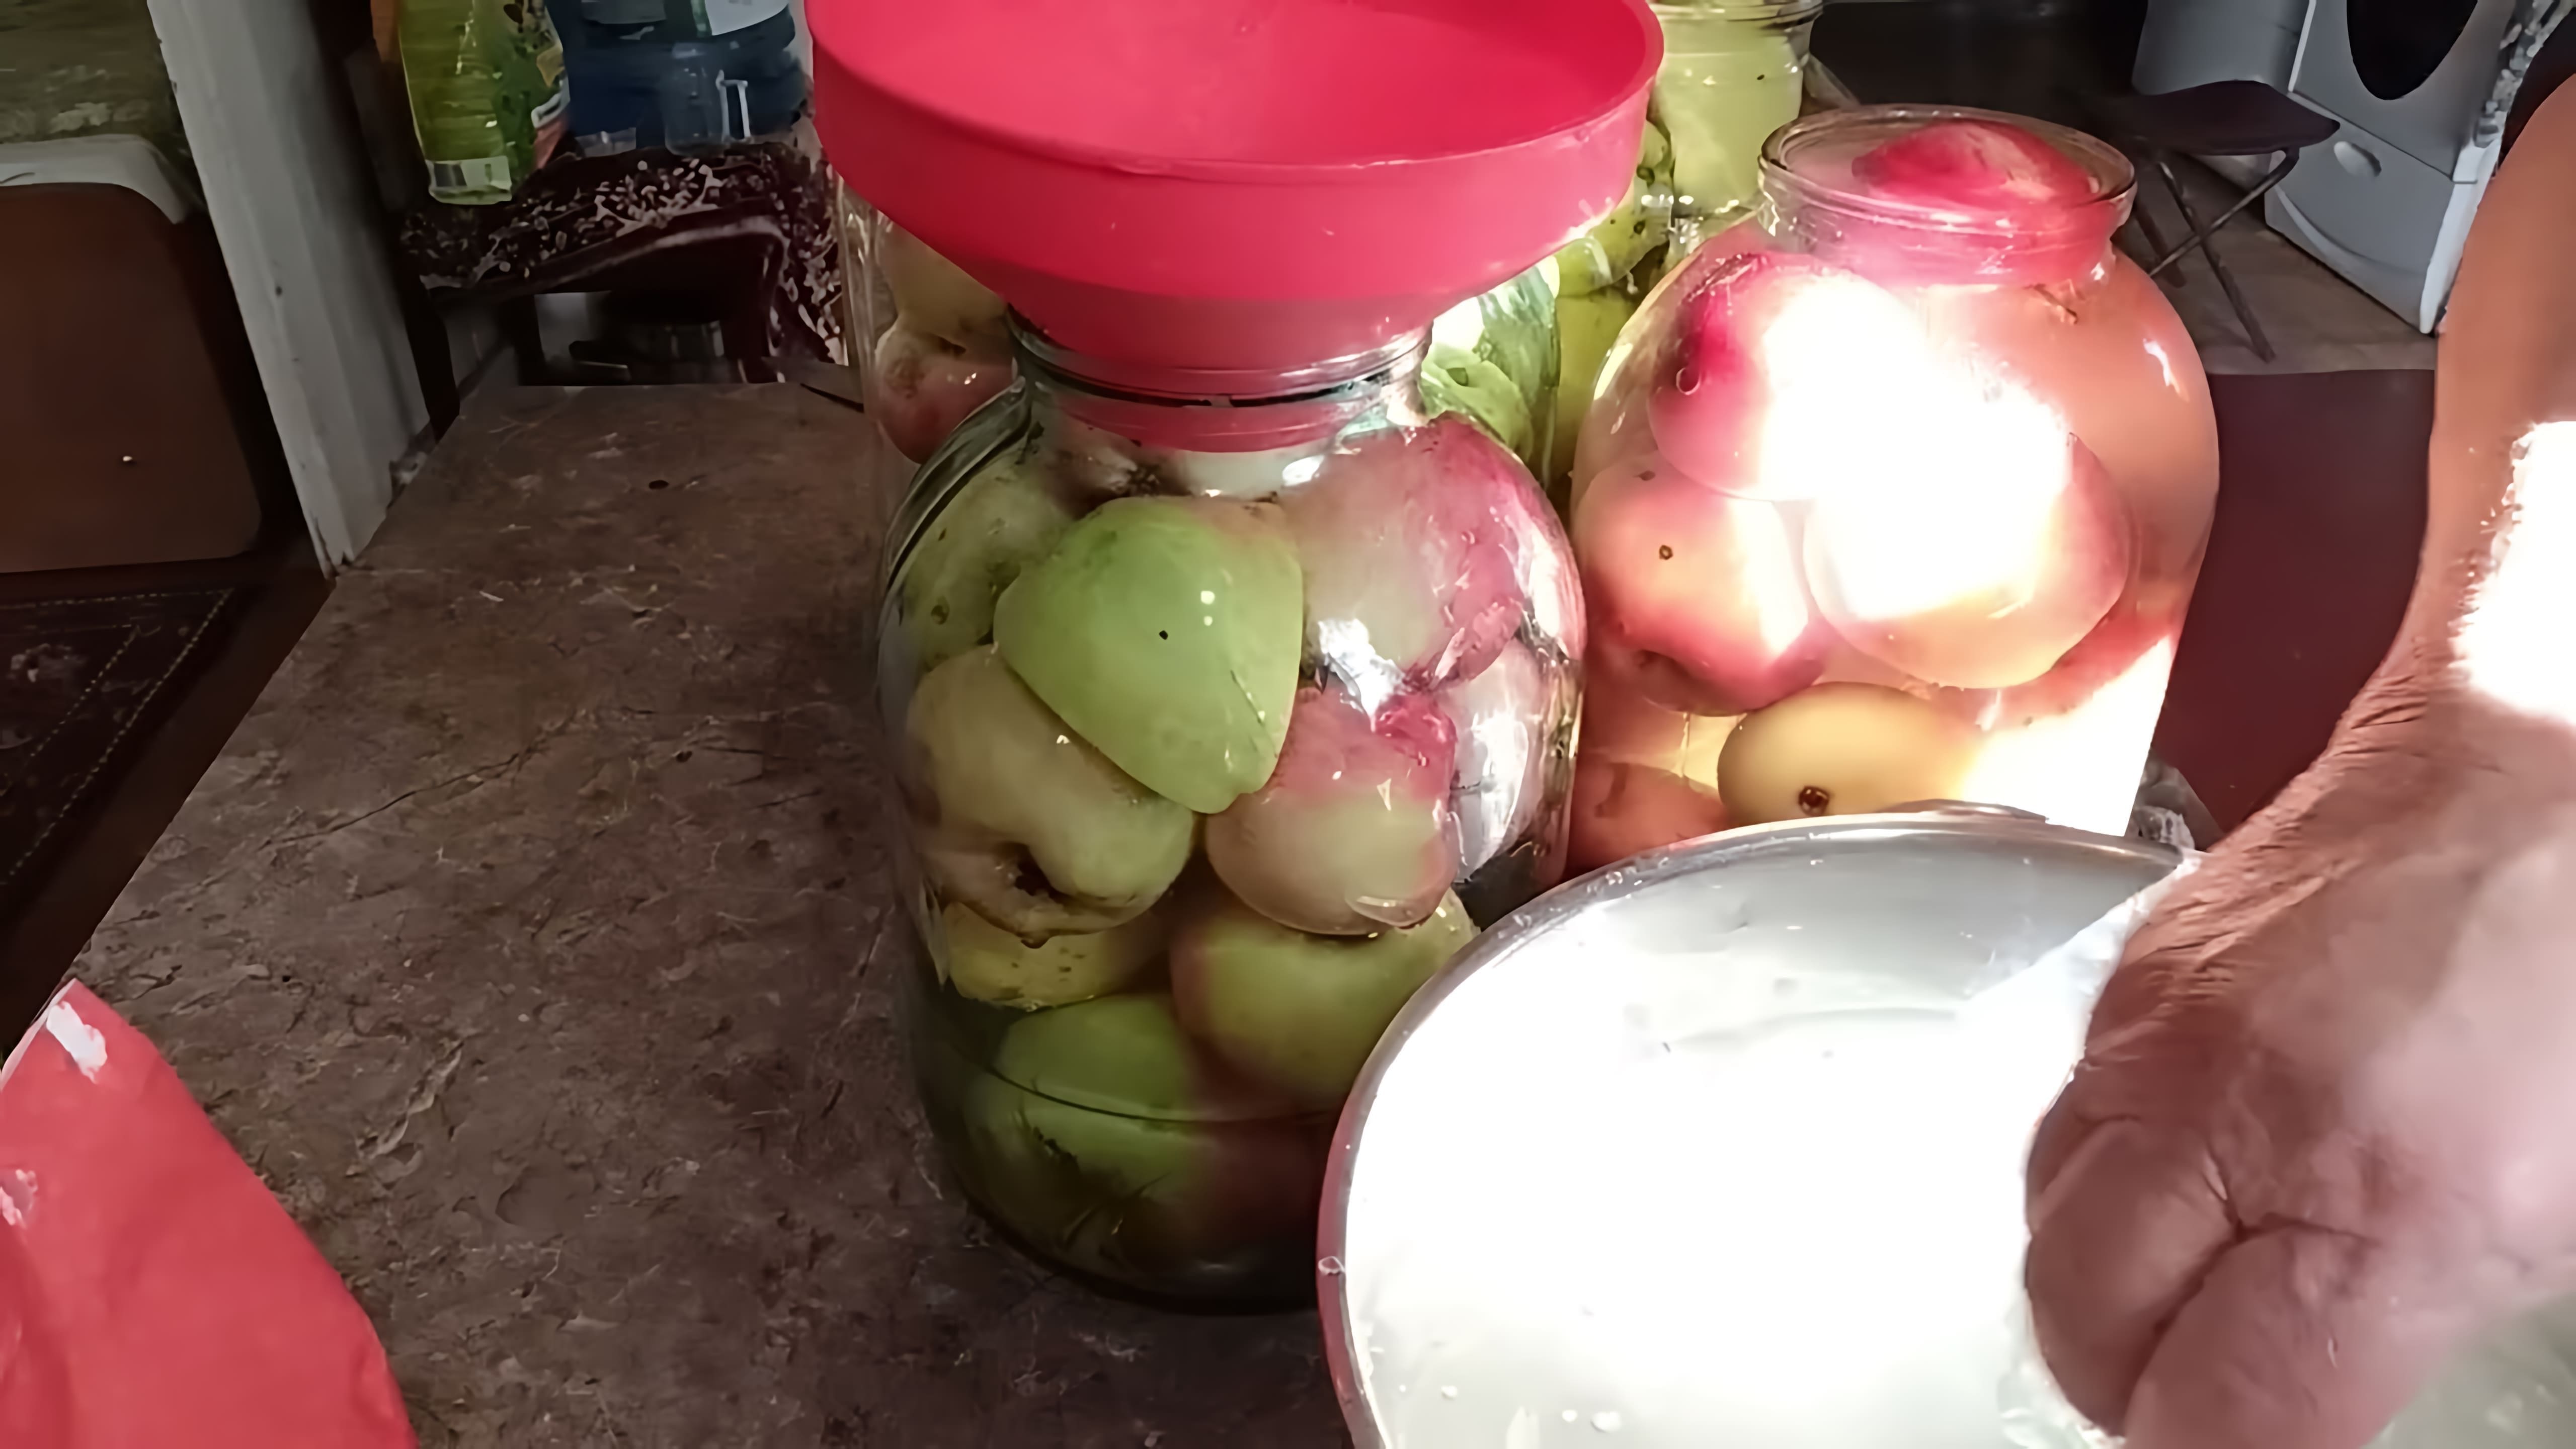 В этом видео бабушка Галя делится своим опытом приготовления моченых яблок без использования листьев